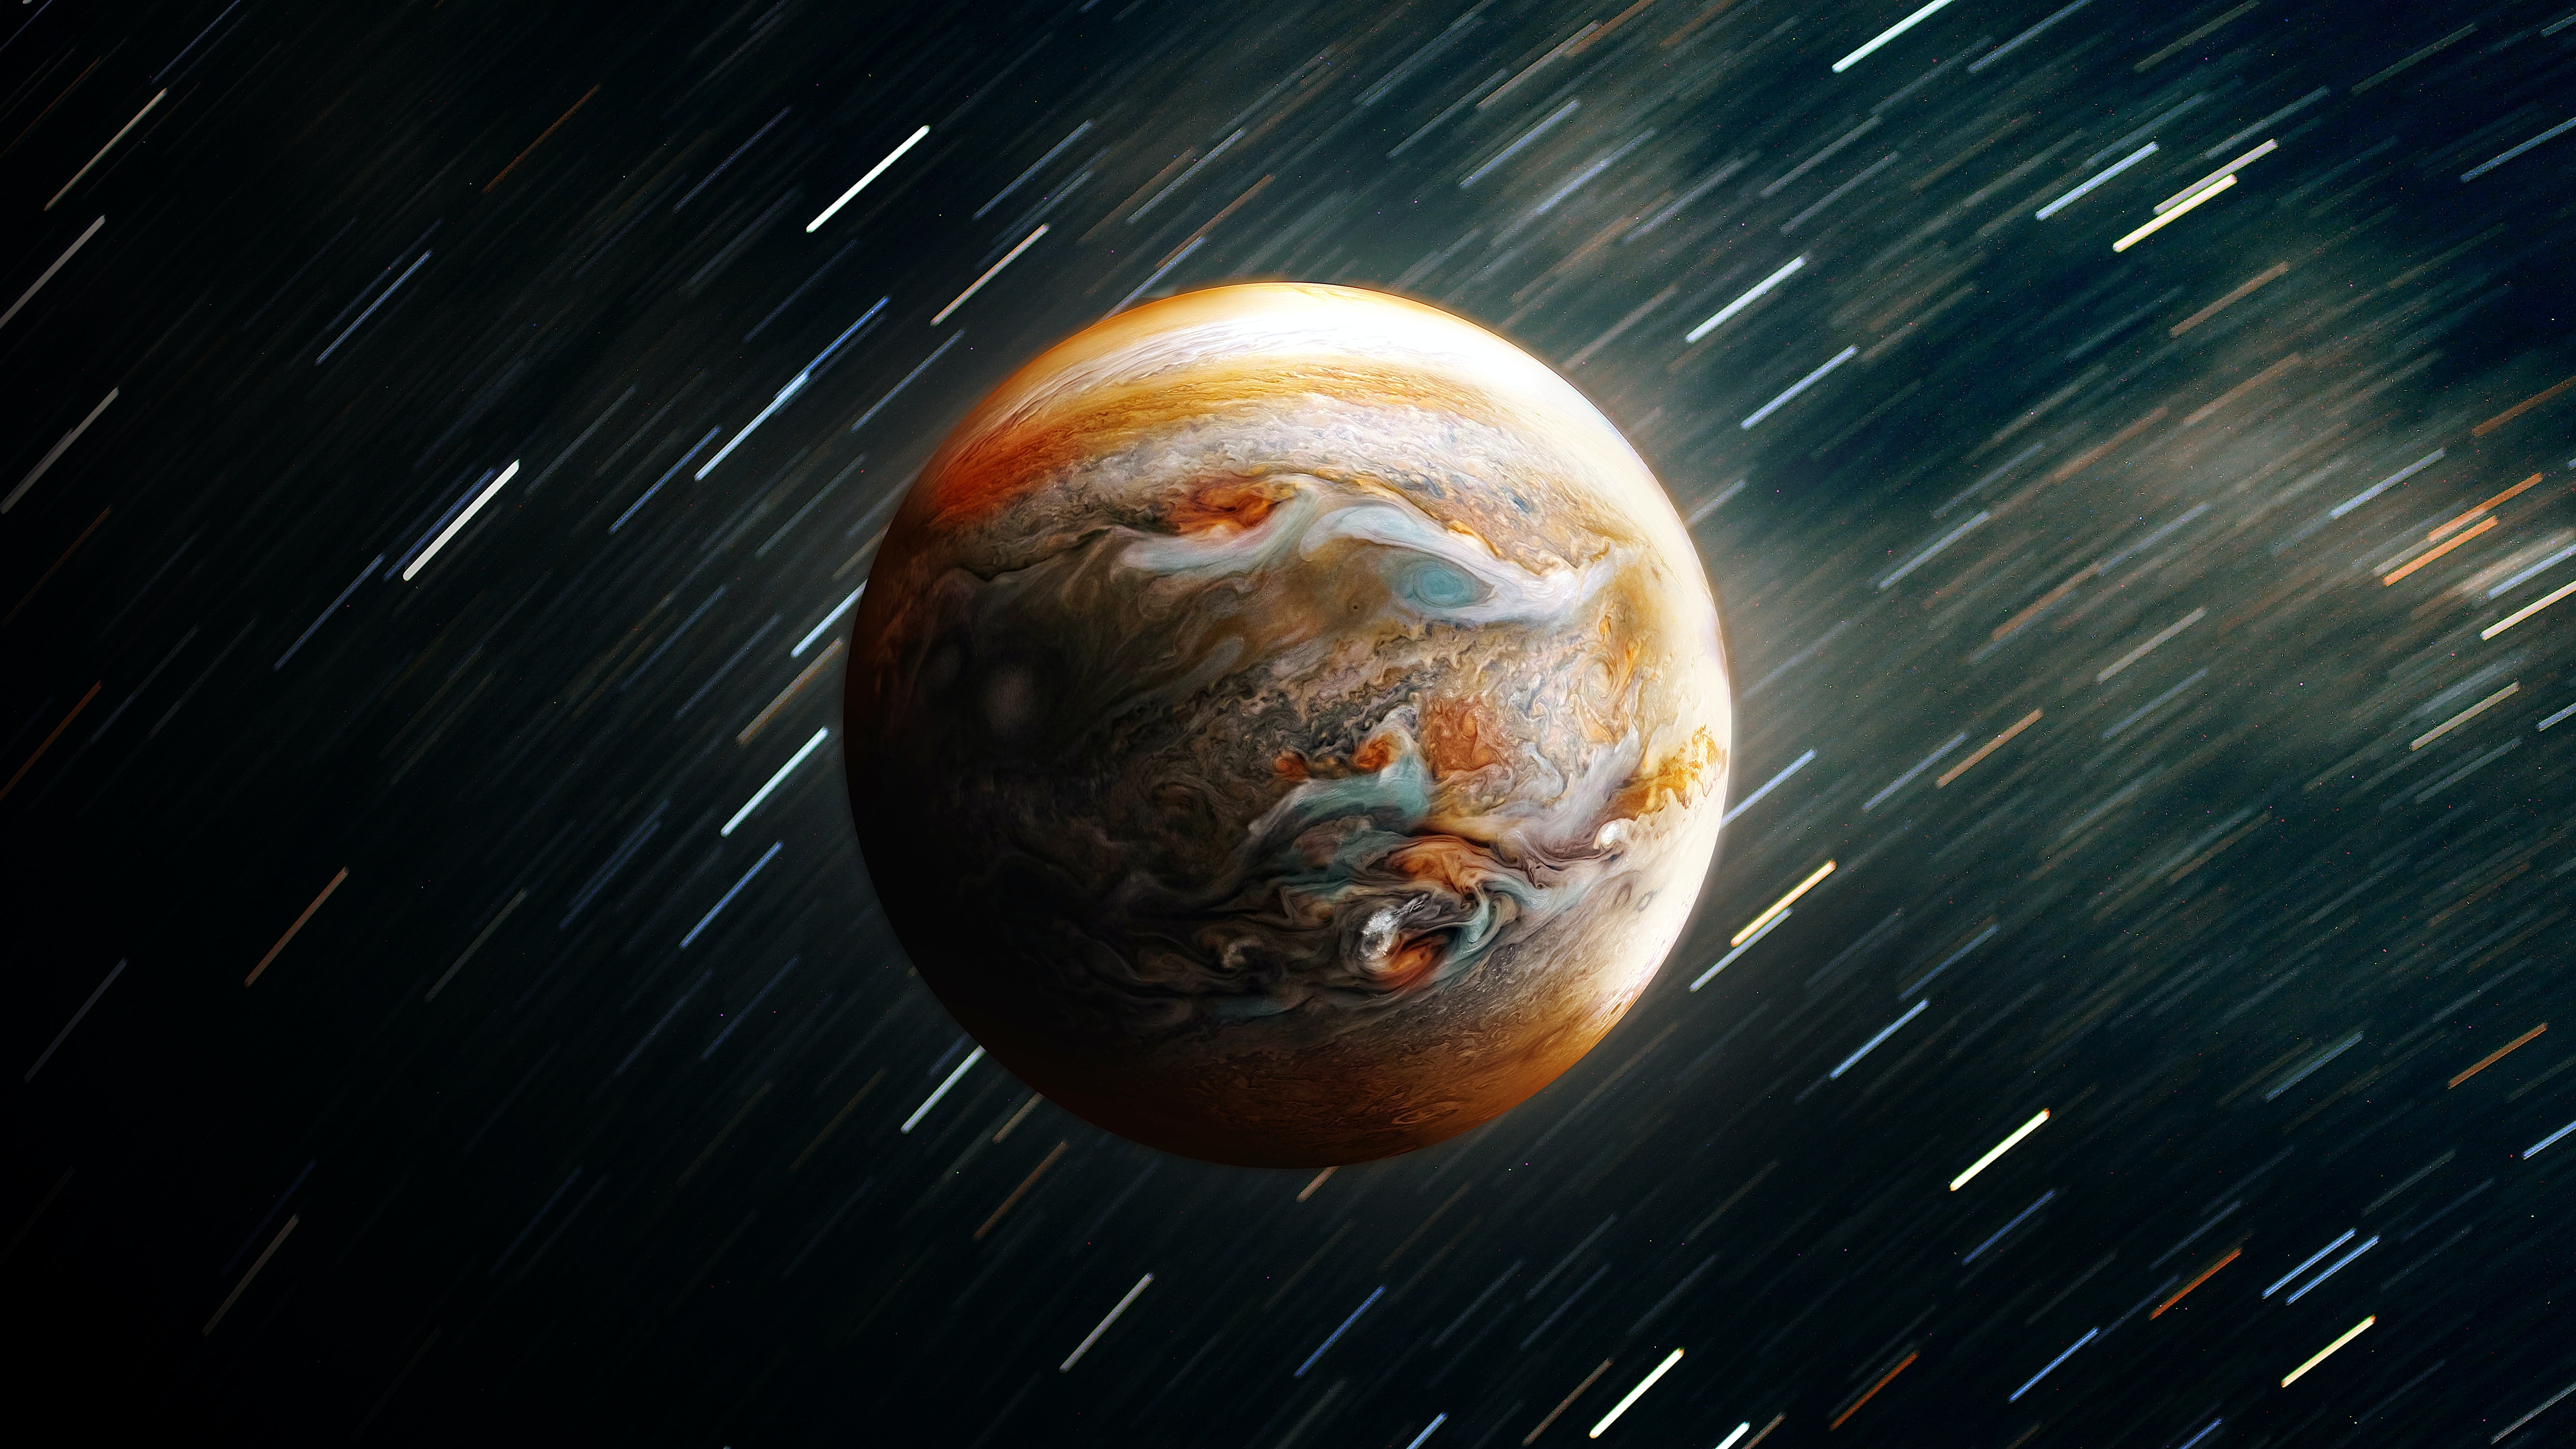 HD wallpaper, Outer Space, Solar System, Jupiter, 5K, Planet, Timelapse, Astronomy, Digital Art